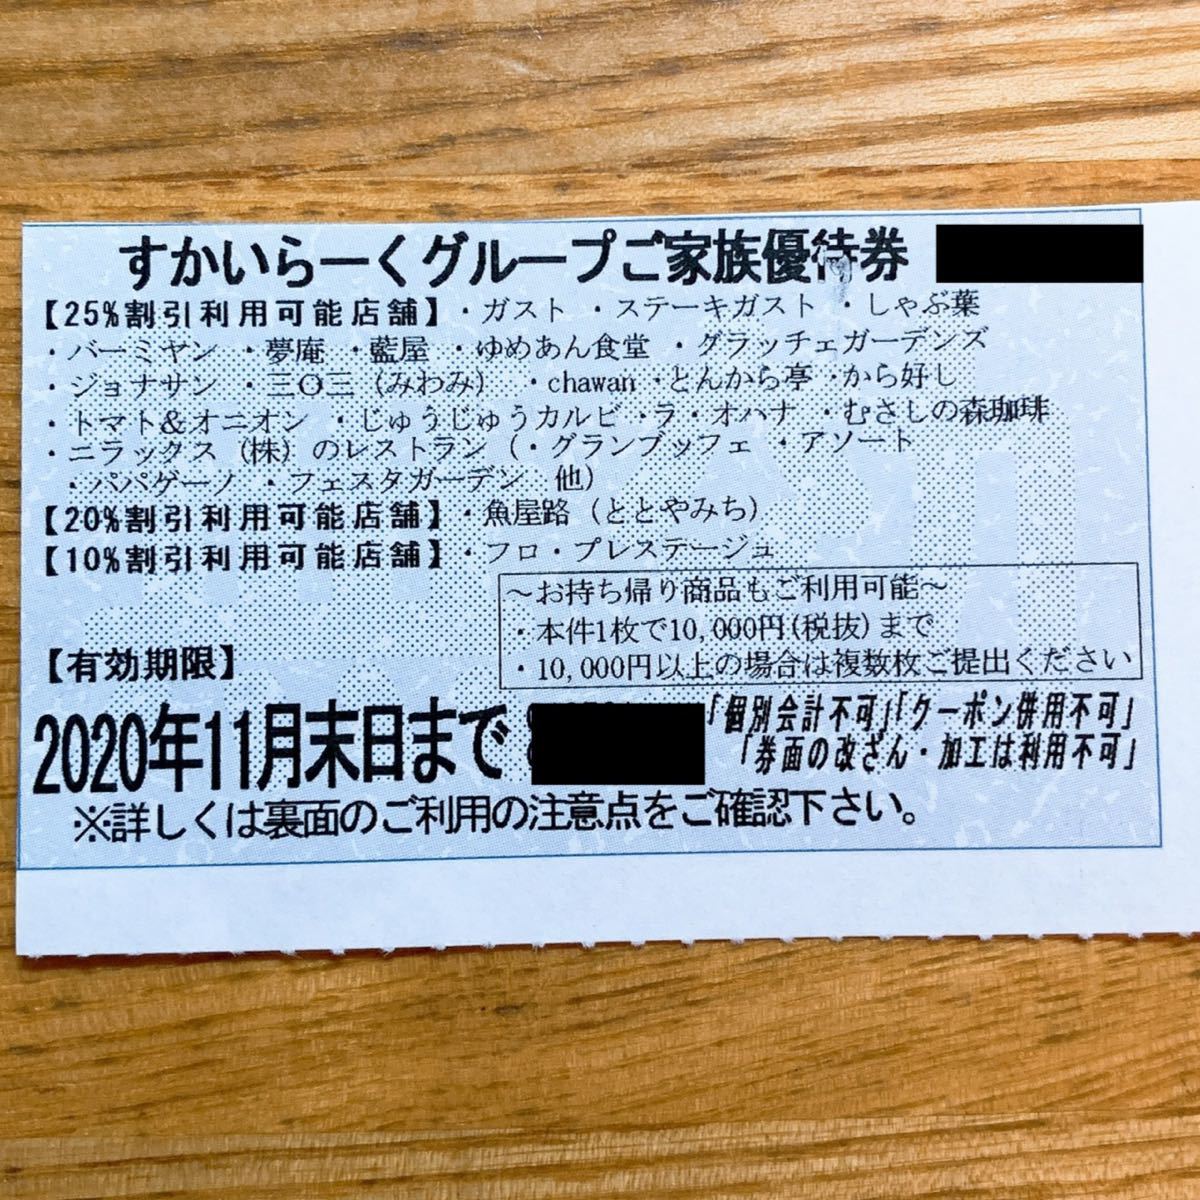 【78%OFF!】 すかいらーくグループ 家族優待券 2枚 ienomat.com.br